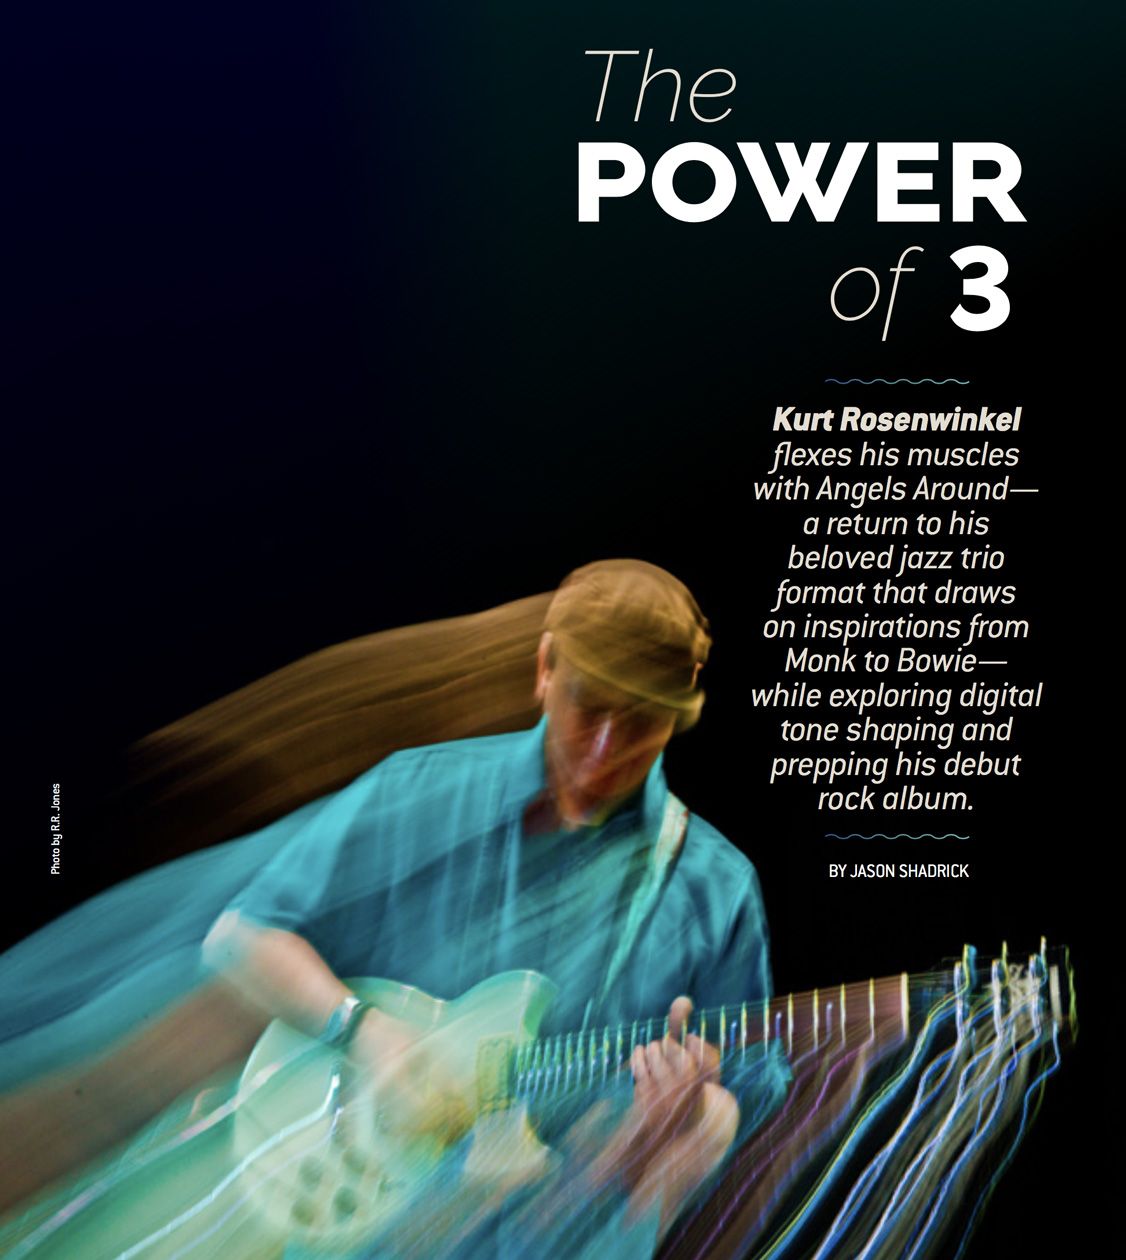 Kurt Rosenwinkel and the Power of 3